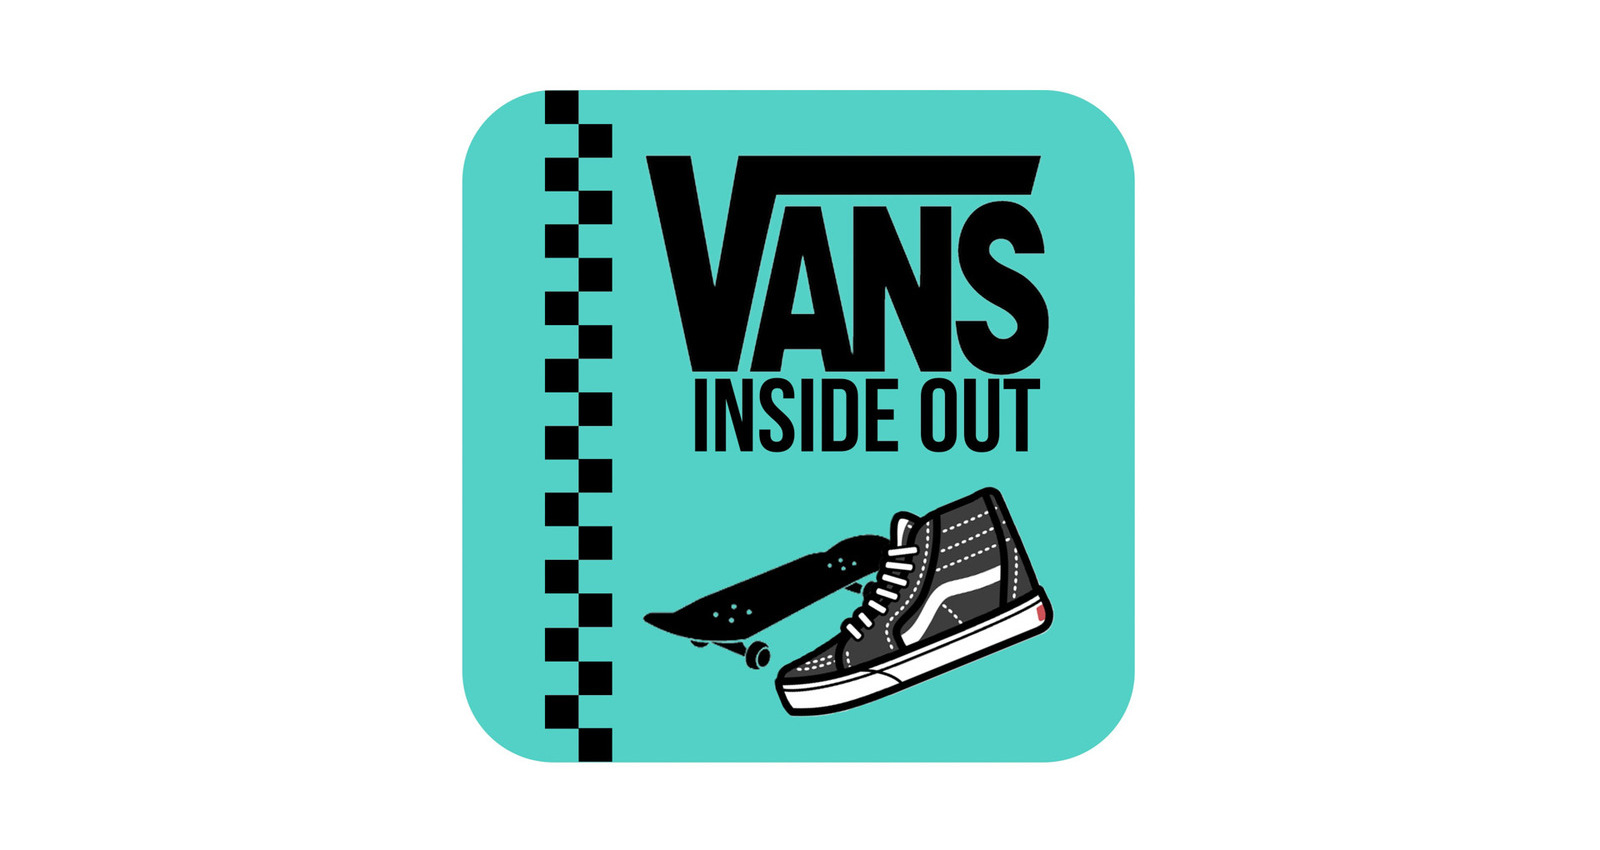 Vans Inside Out